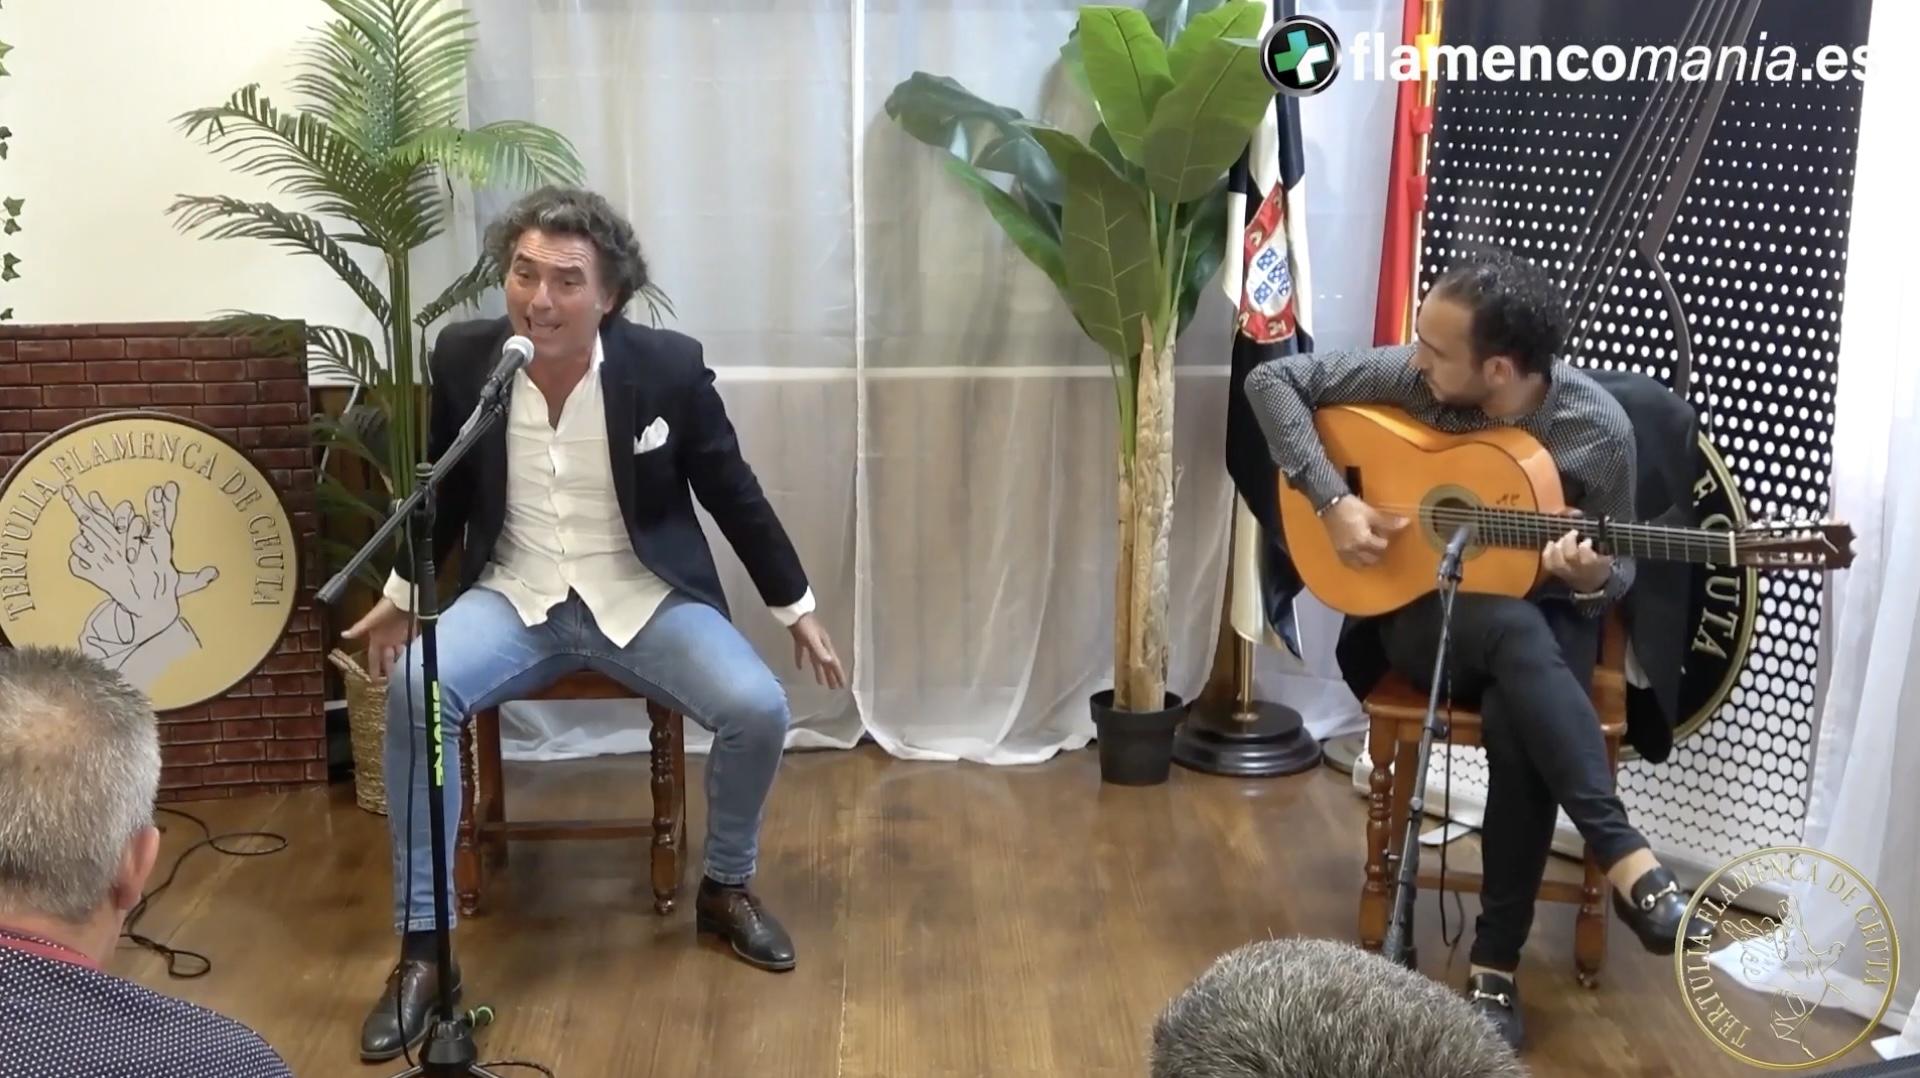 Flamencomanía TV: "Paco Peña y Vicente Santiago en la Tertulia Flamenca de Ceuta''